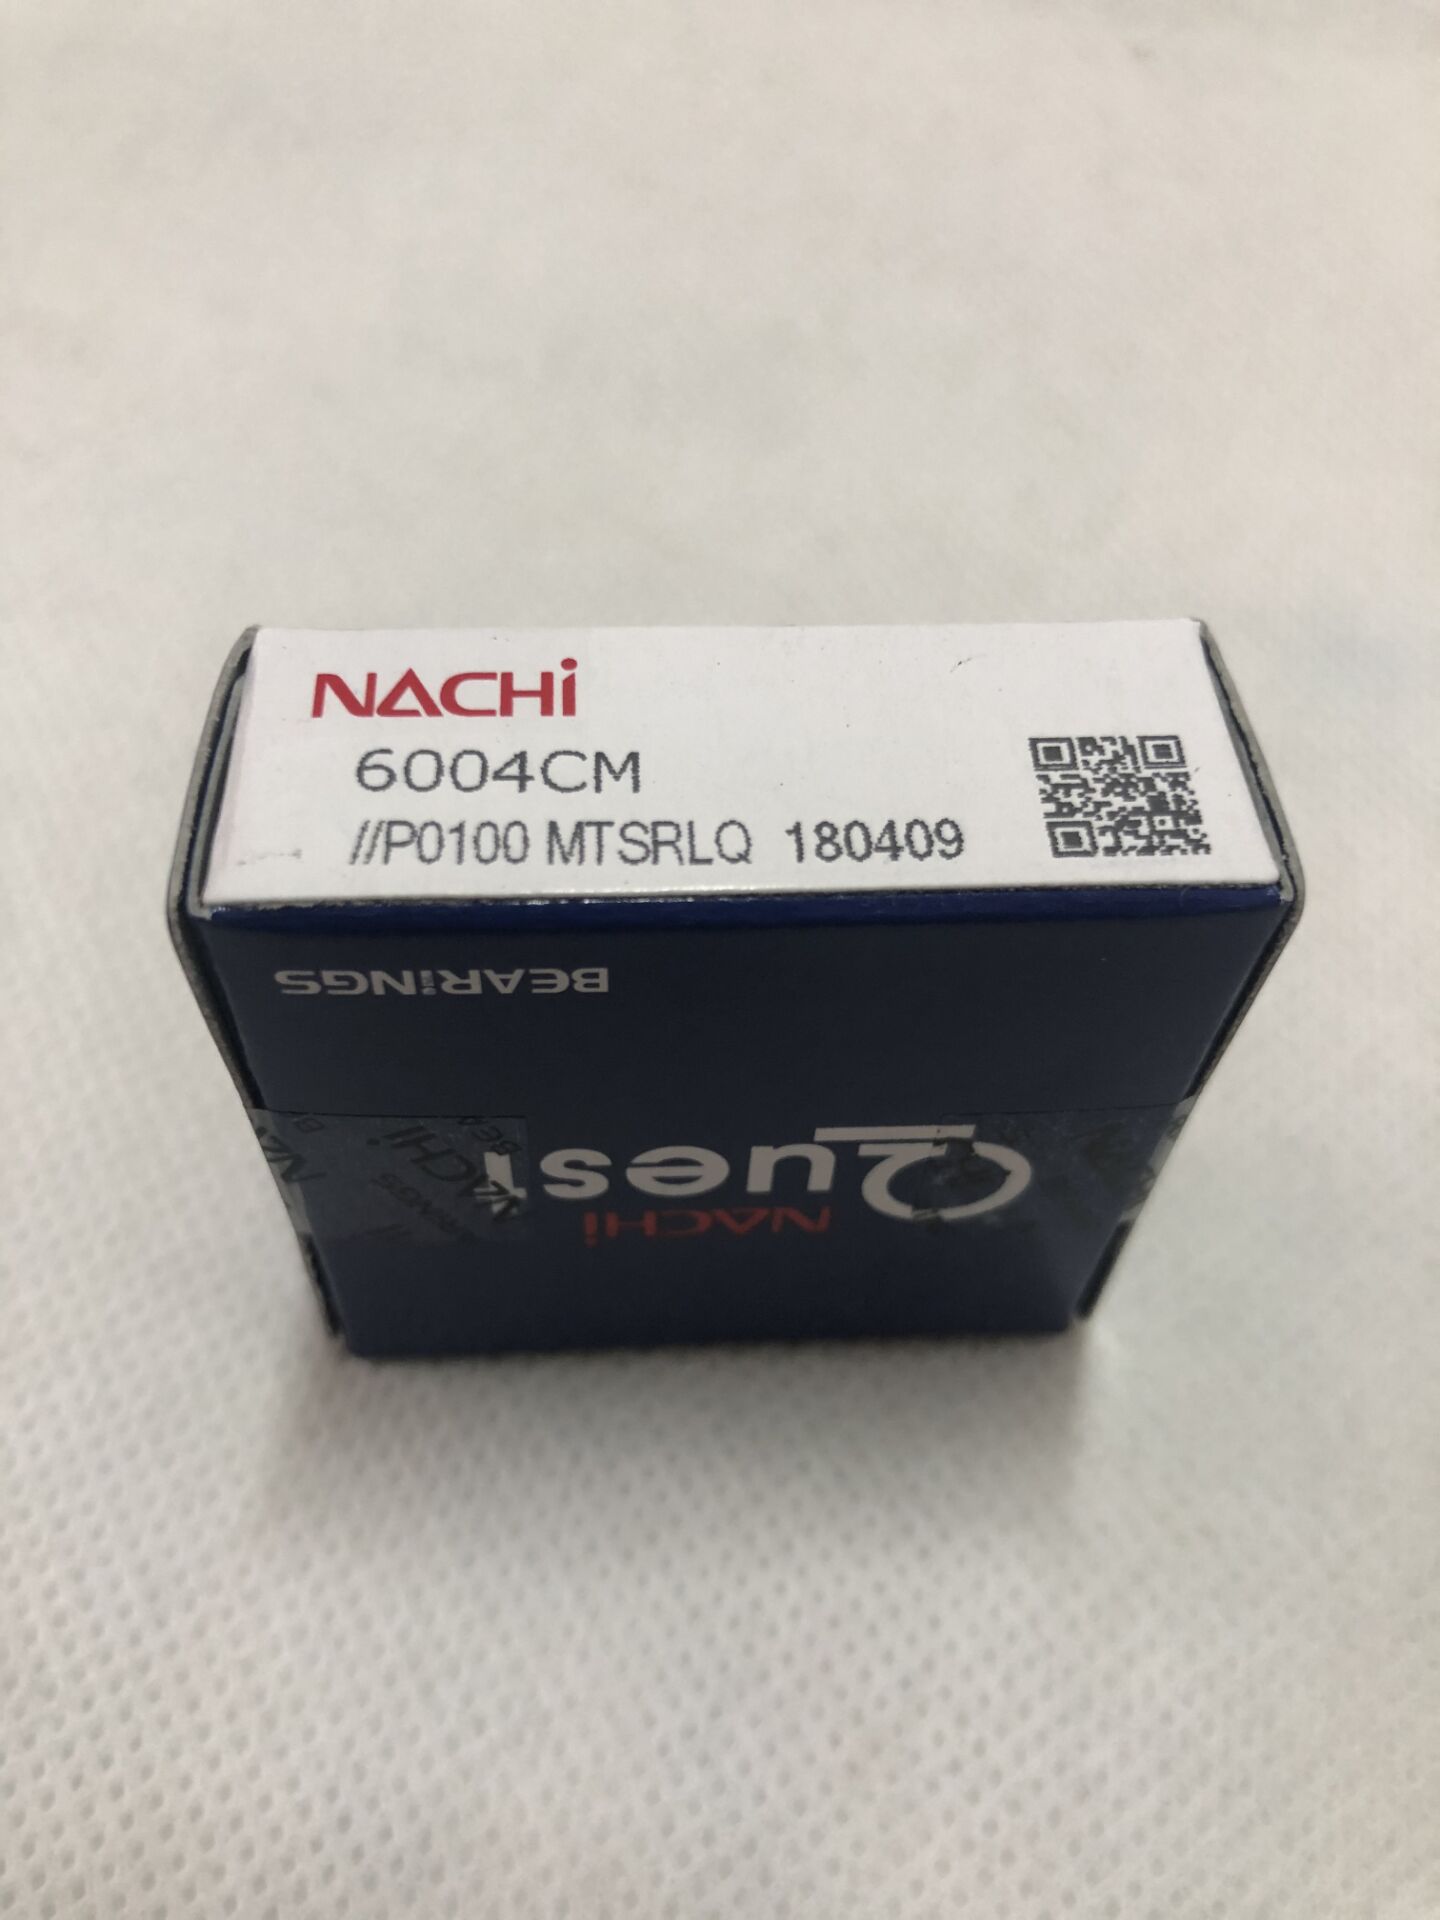 Nachi 6004